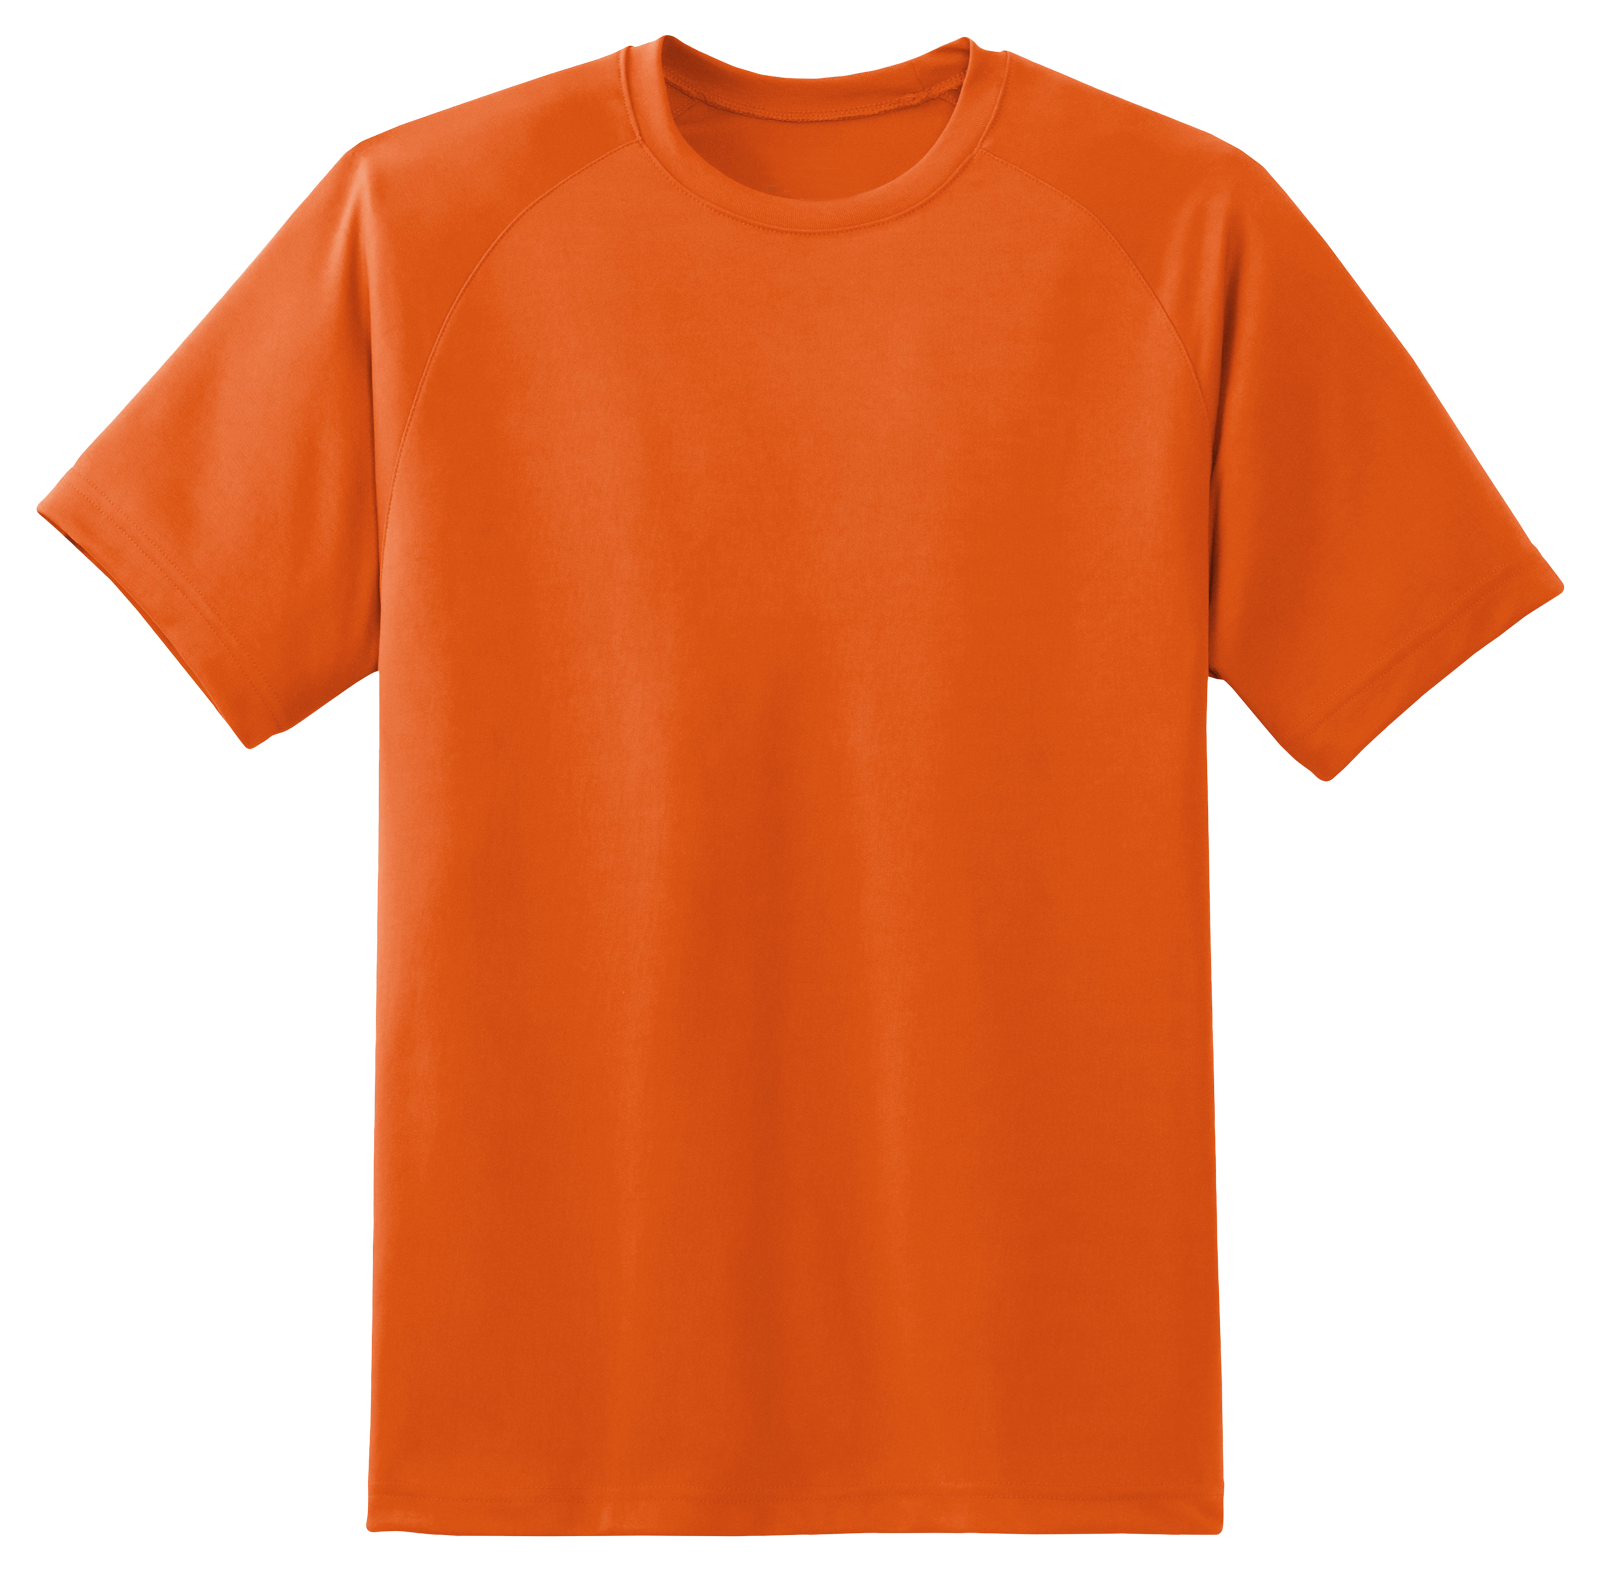 T Shirt Orange PNG Image